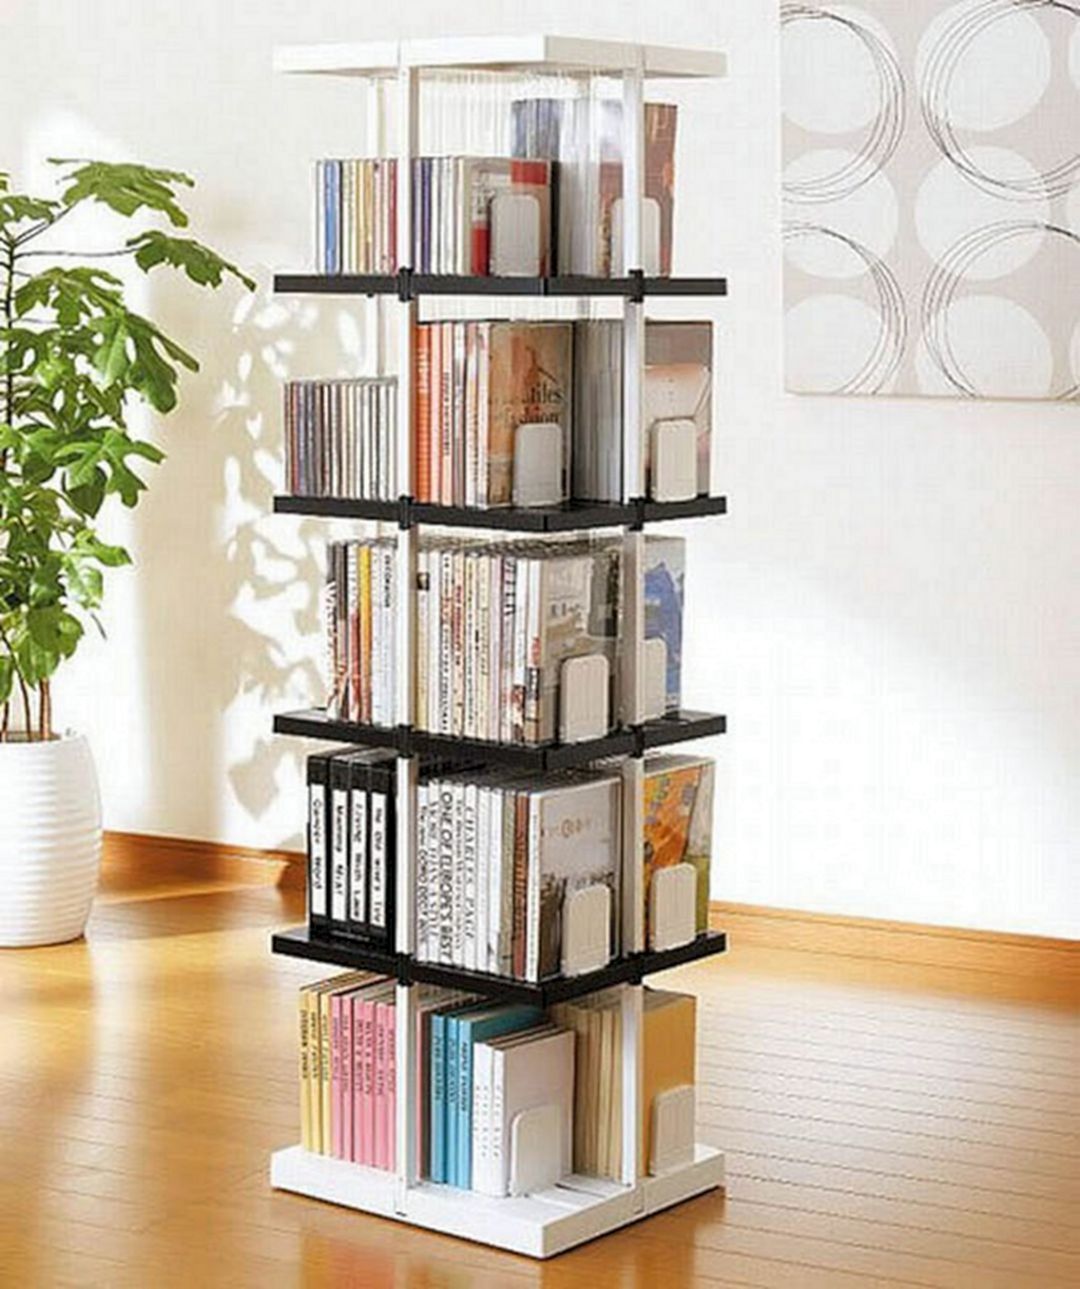 Creative Book Storage Design Ideas